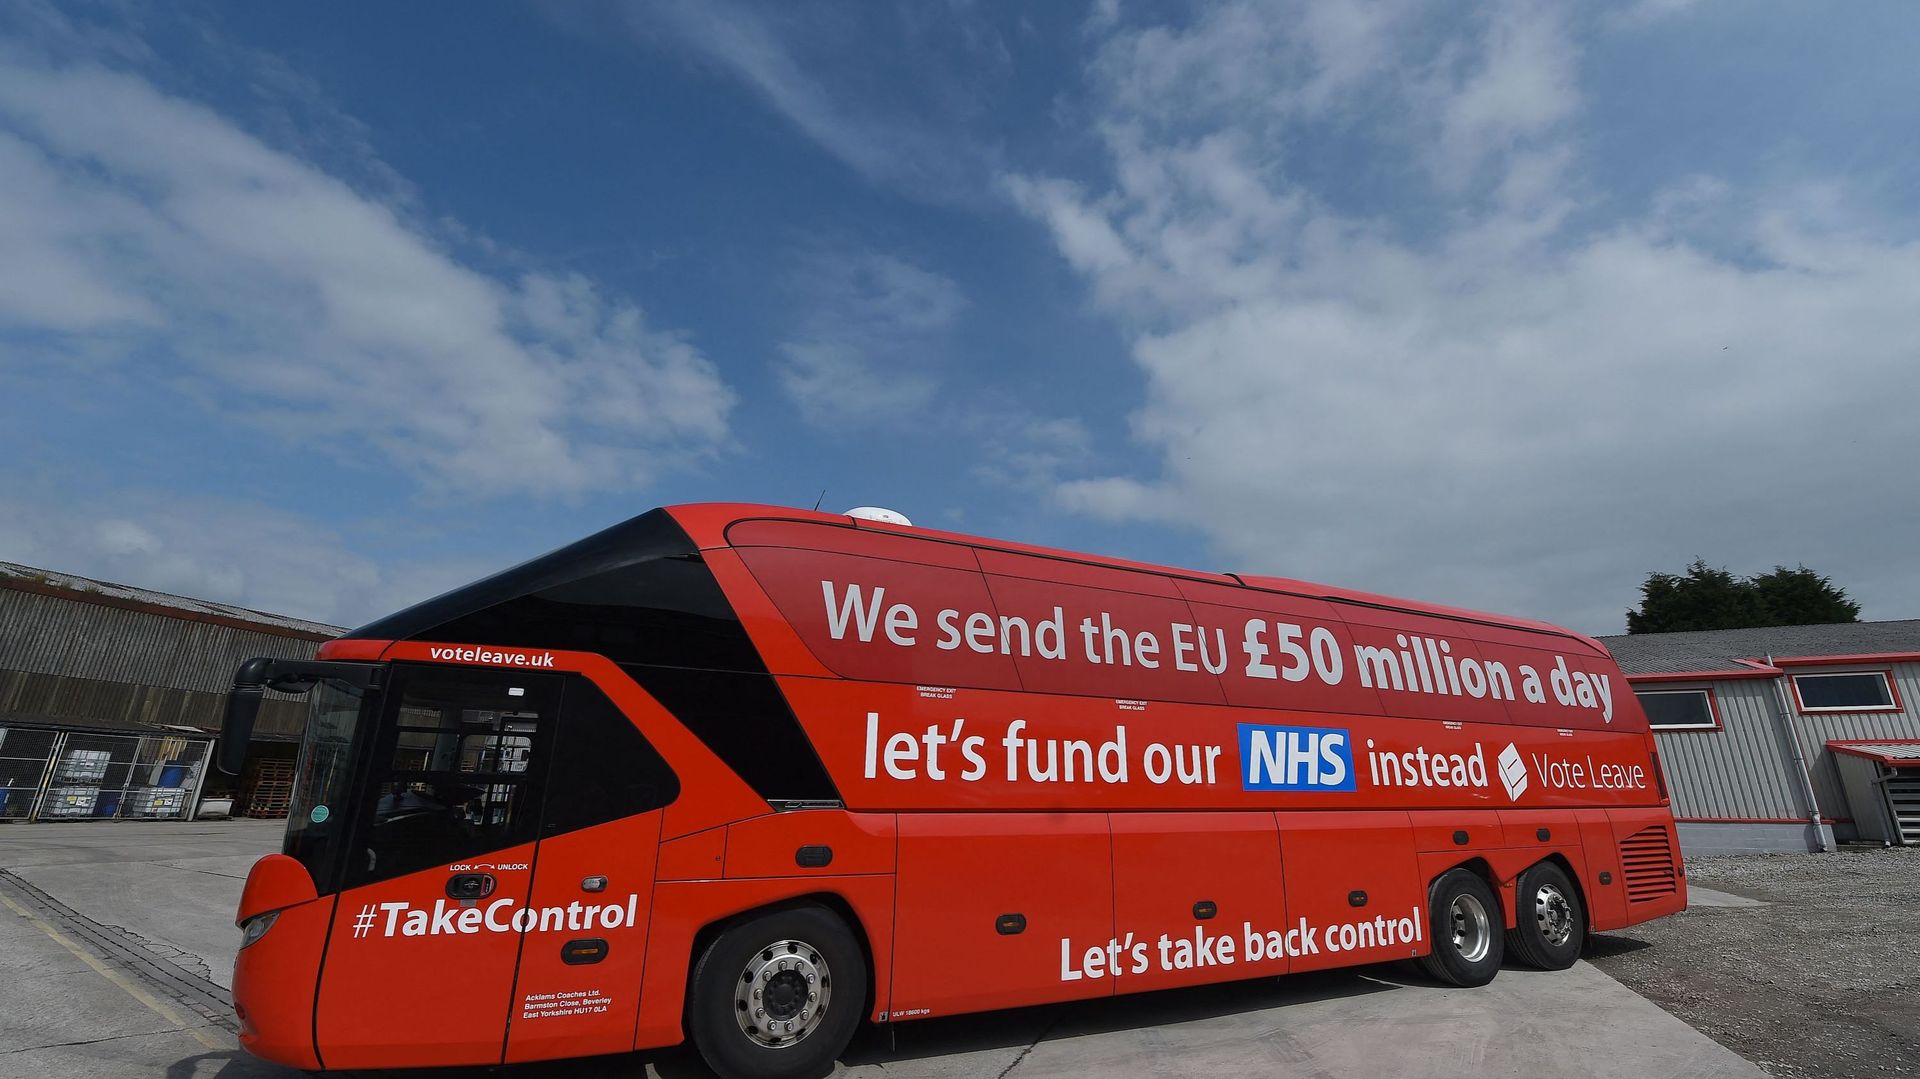 Le célèbre autobus Leave et son slogan mensonger.